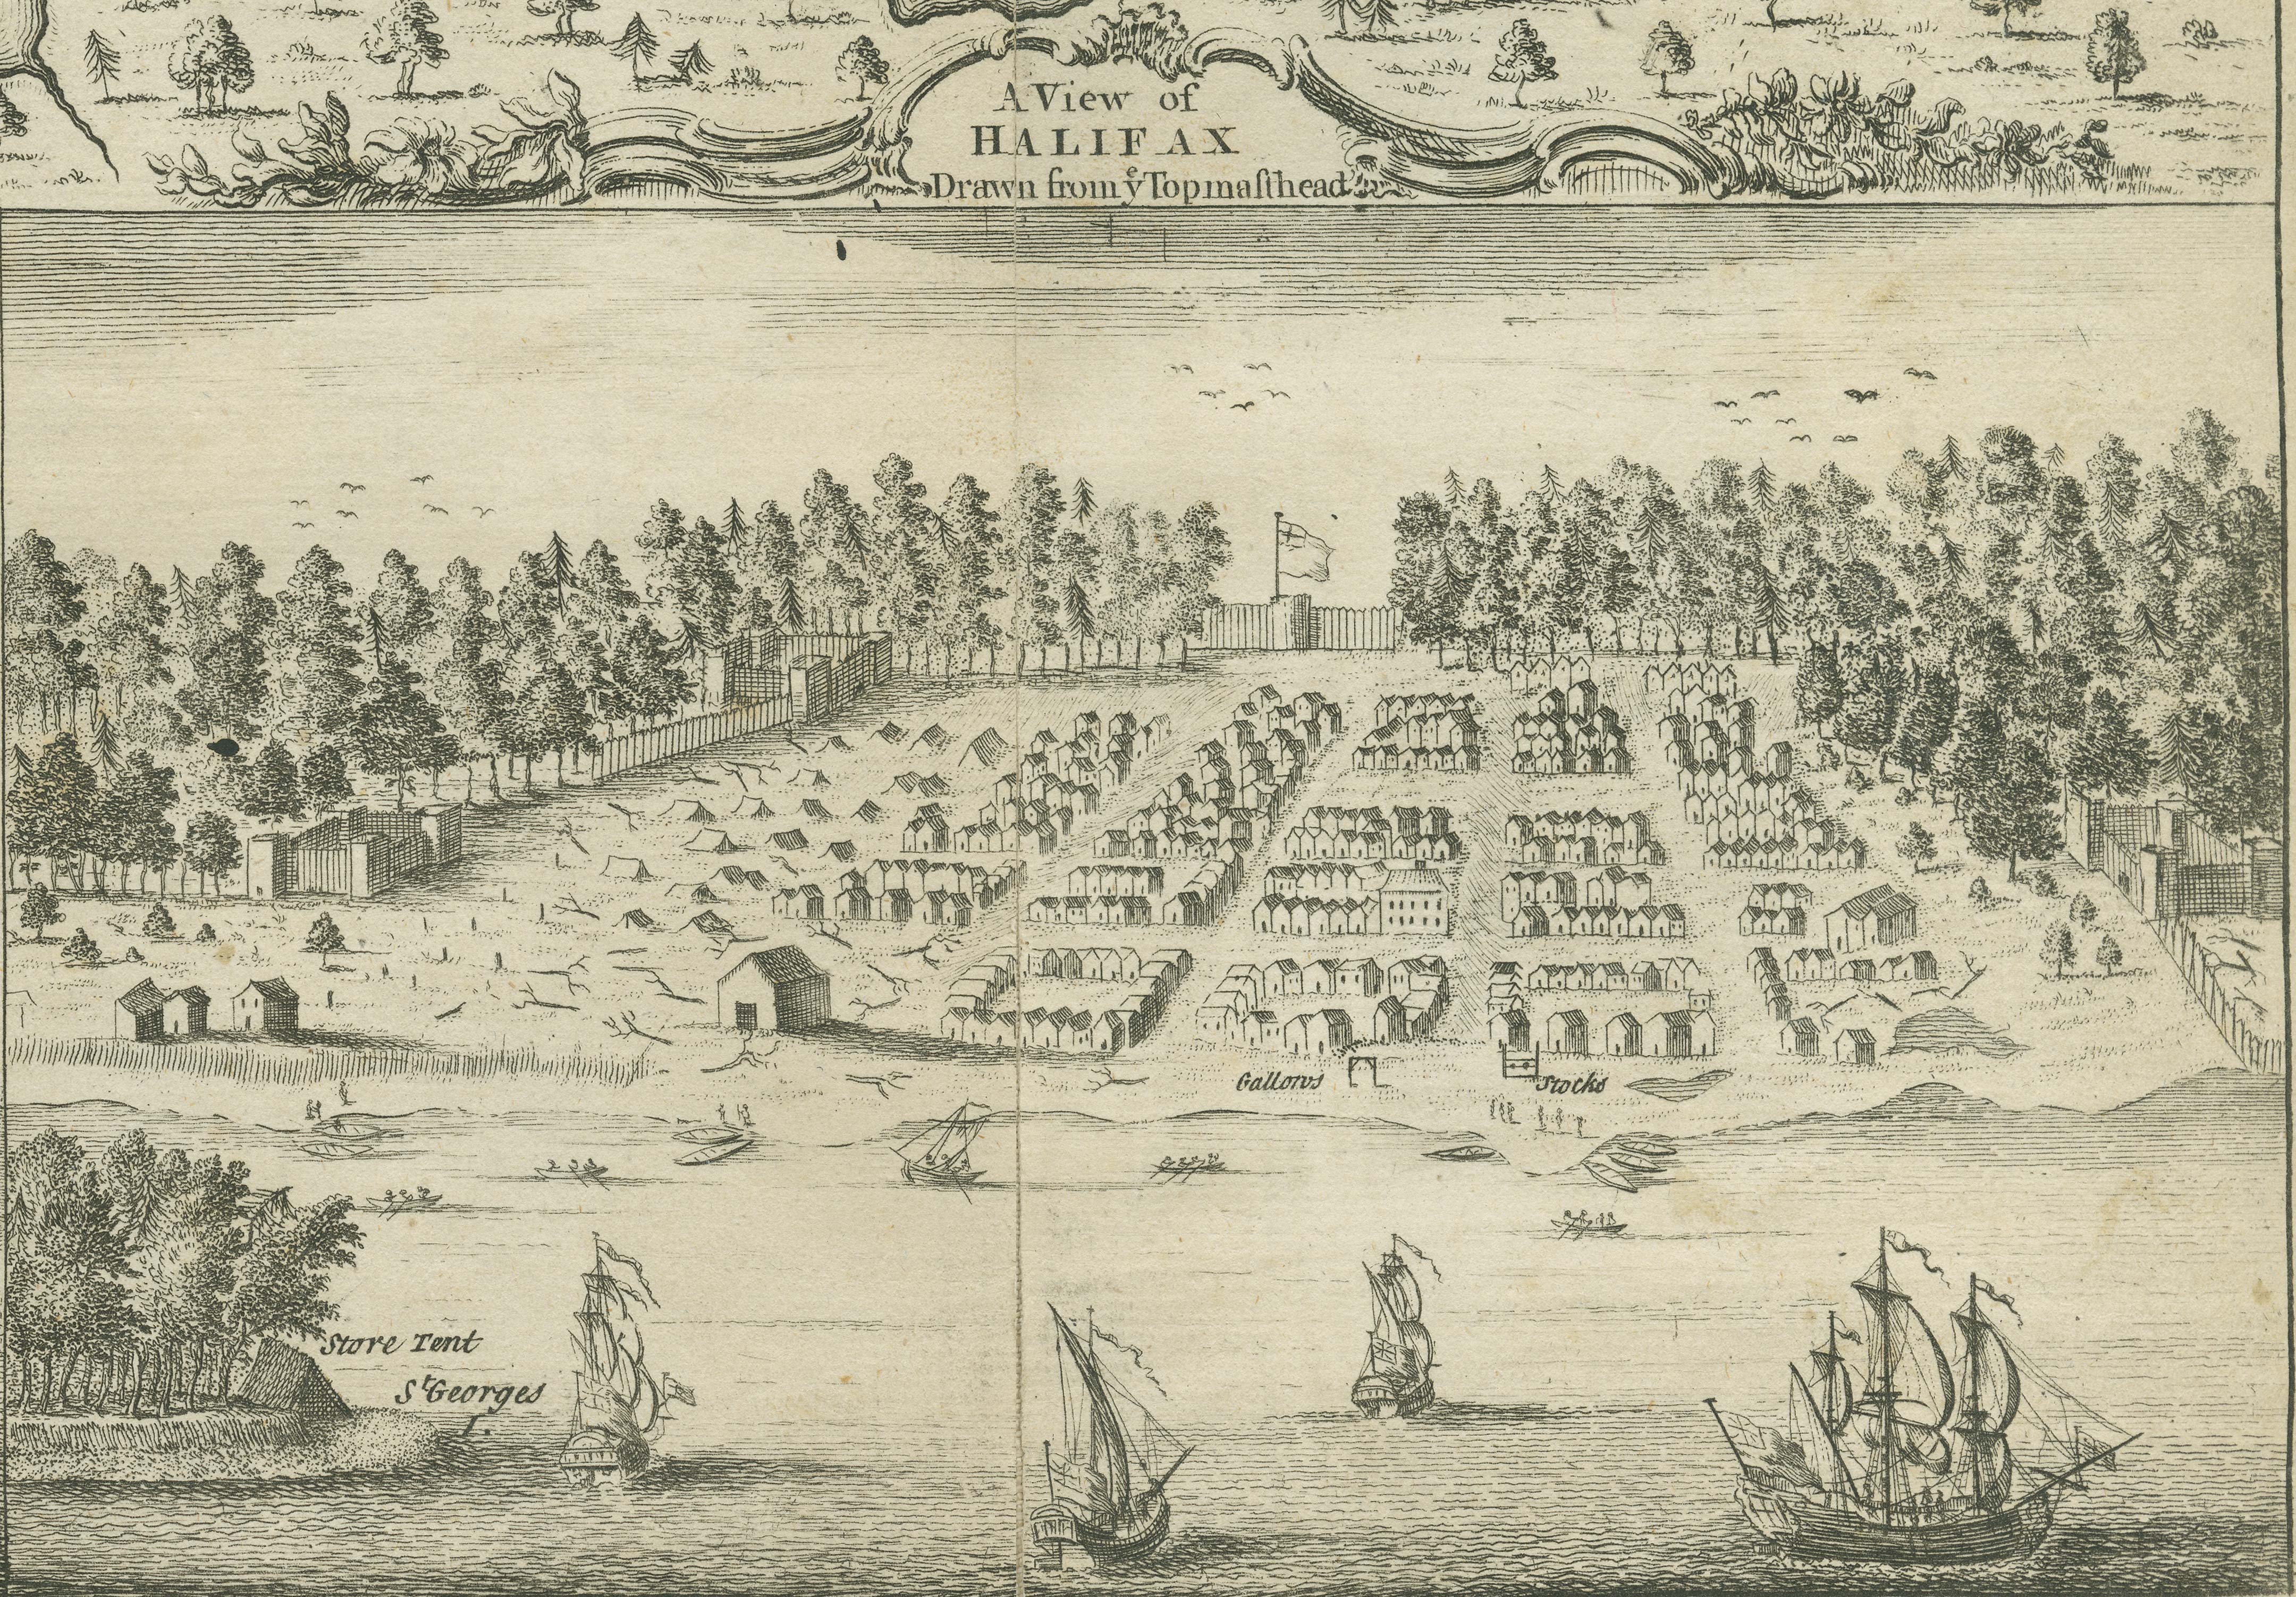 Pildiotsingu Halifax 1749 tulemus